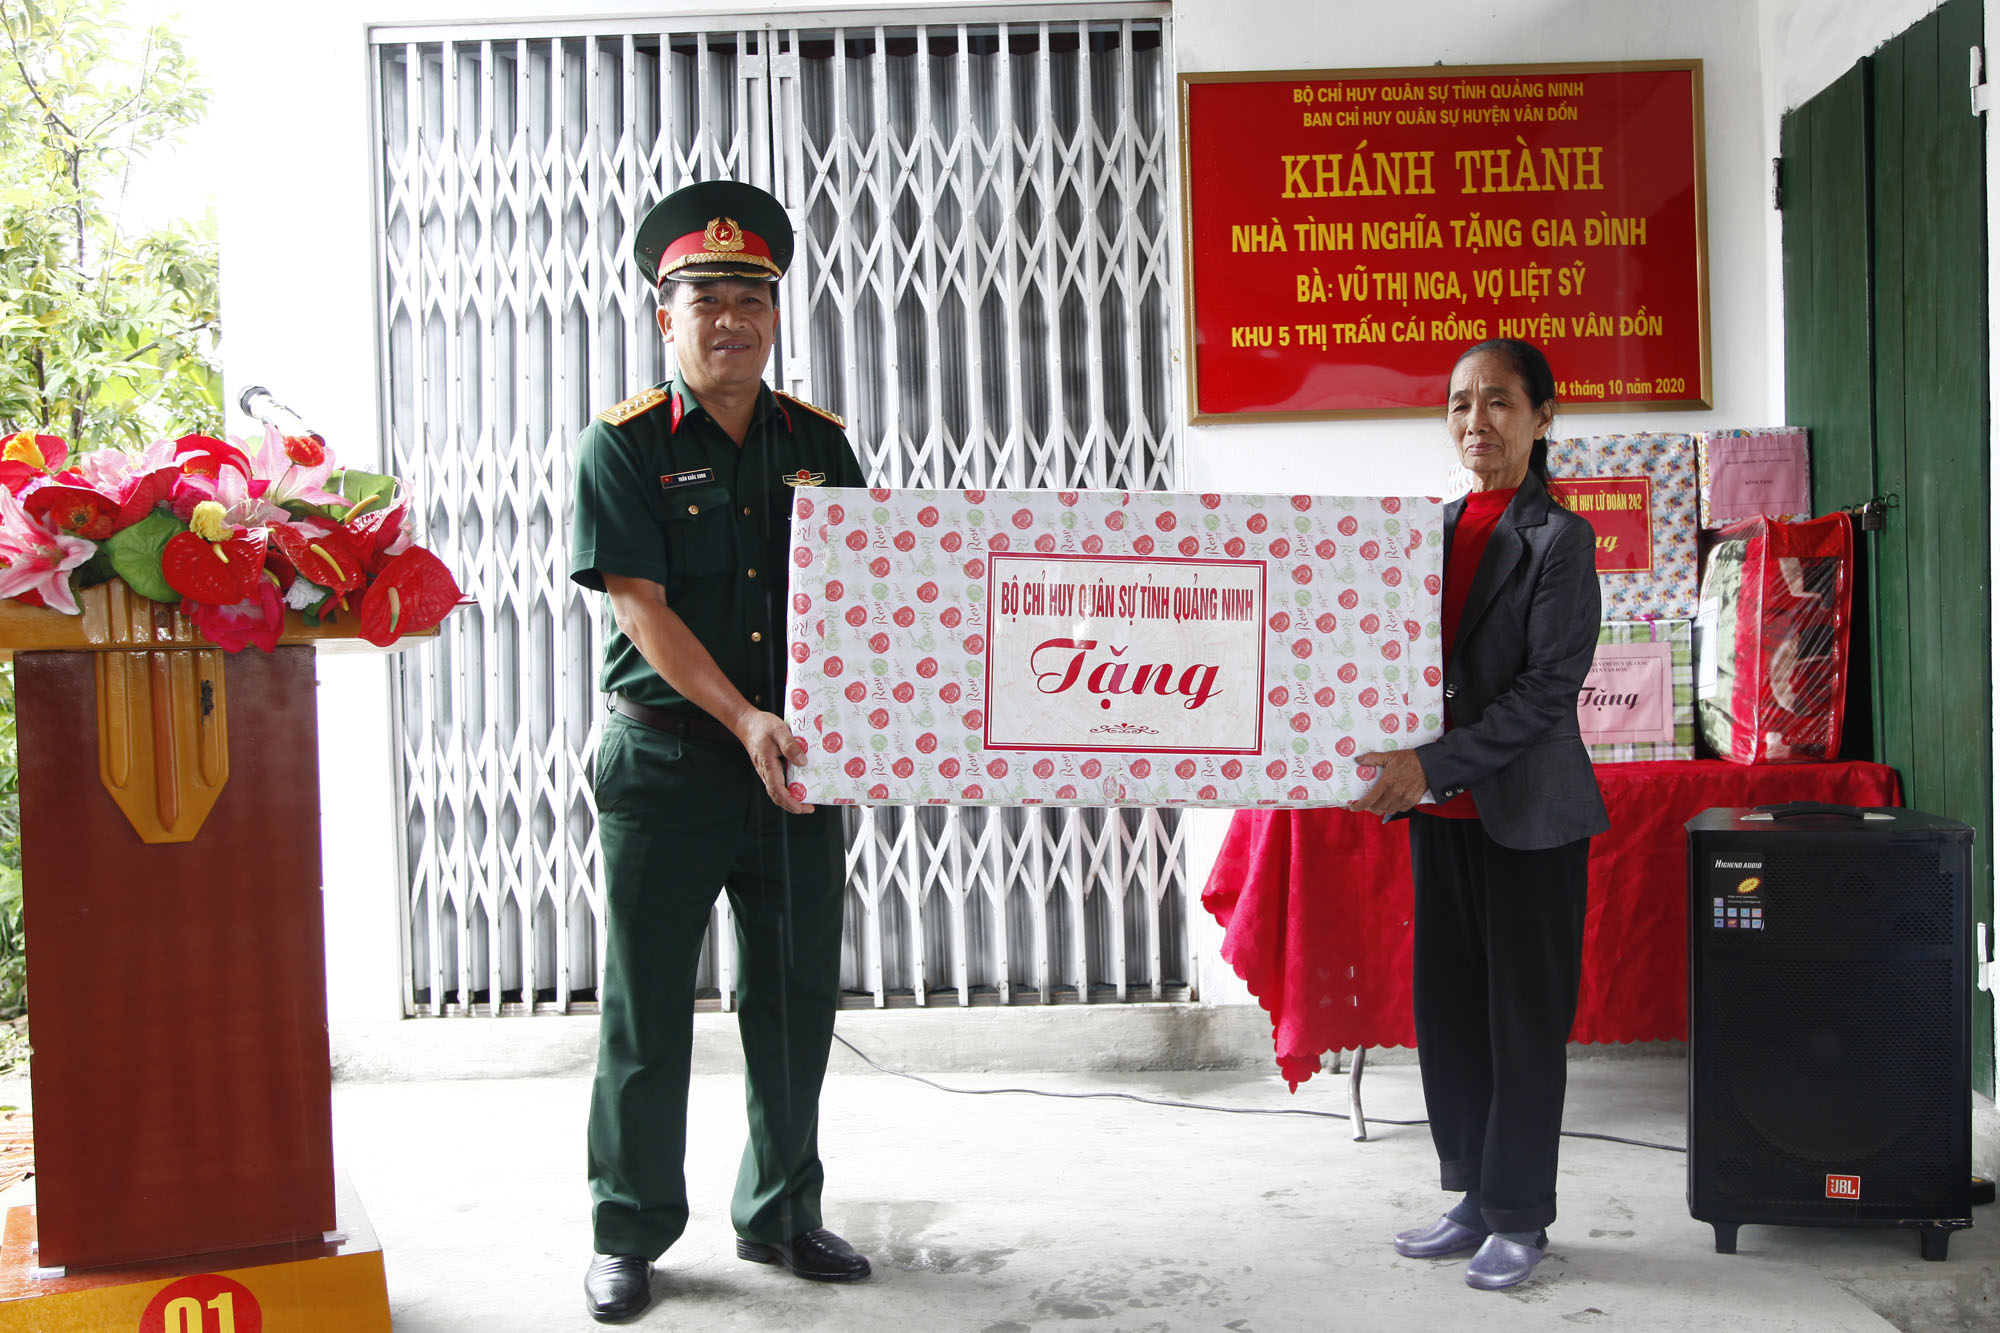 Đại tá Trần Khắc Xung, Phó Chủ nhiệm Chính trị Bộ CHQS tỉnh, tặng quà cho gia đình bà Vũ Thị Nga. 